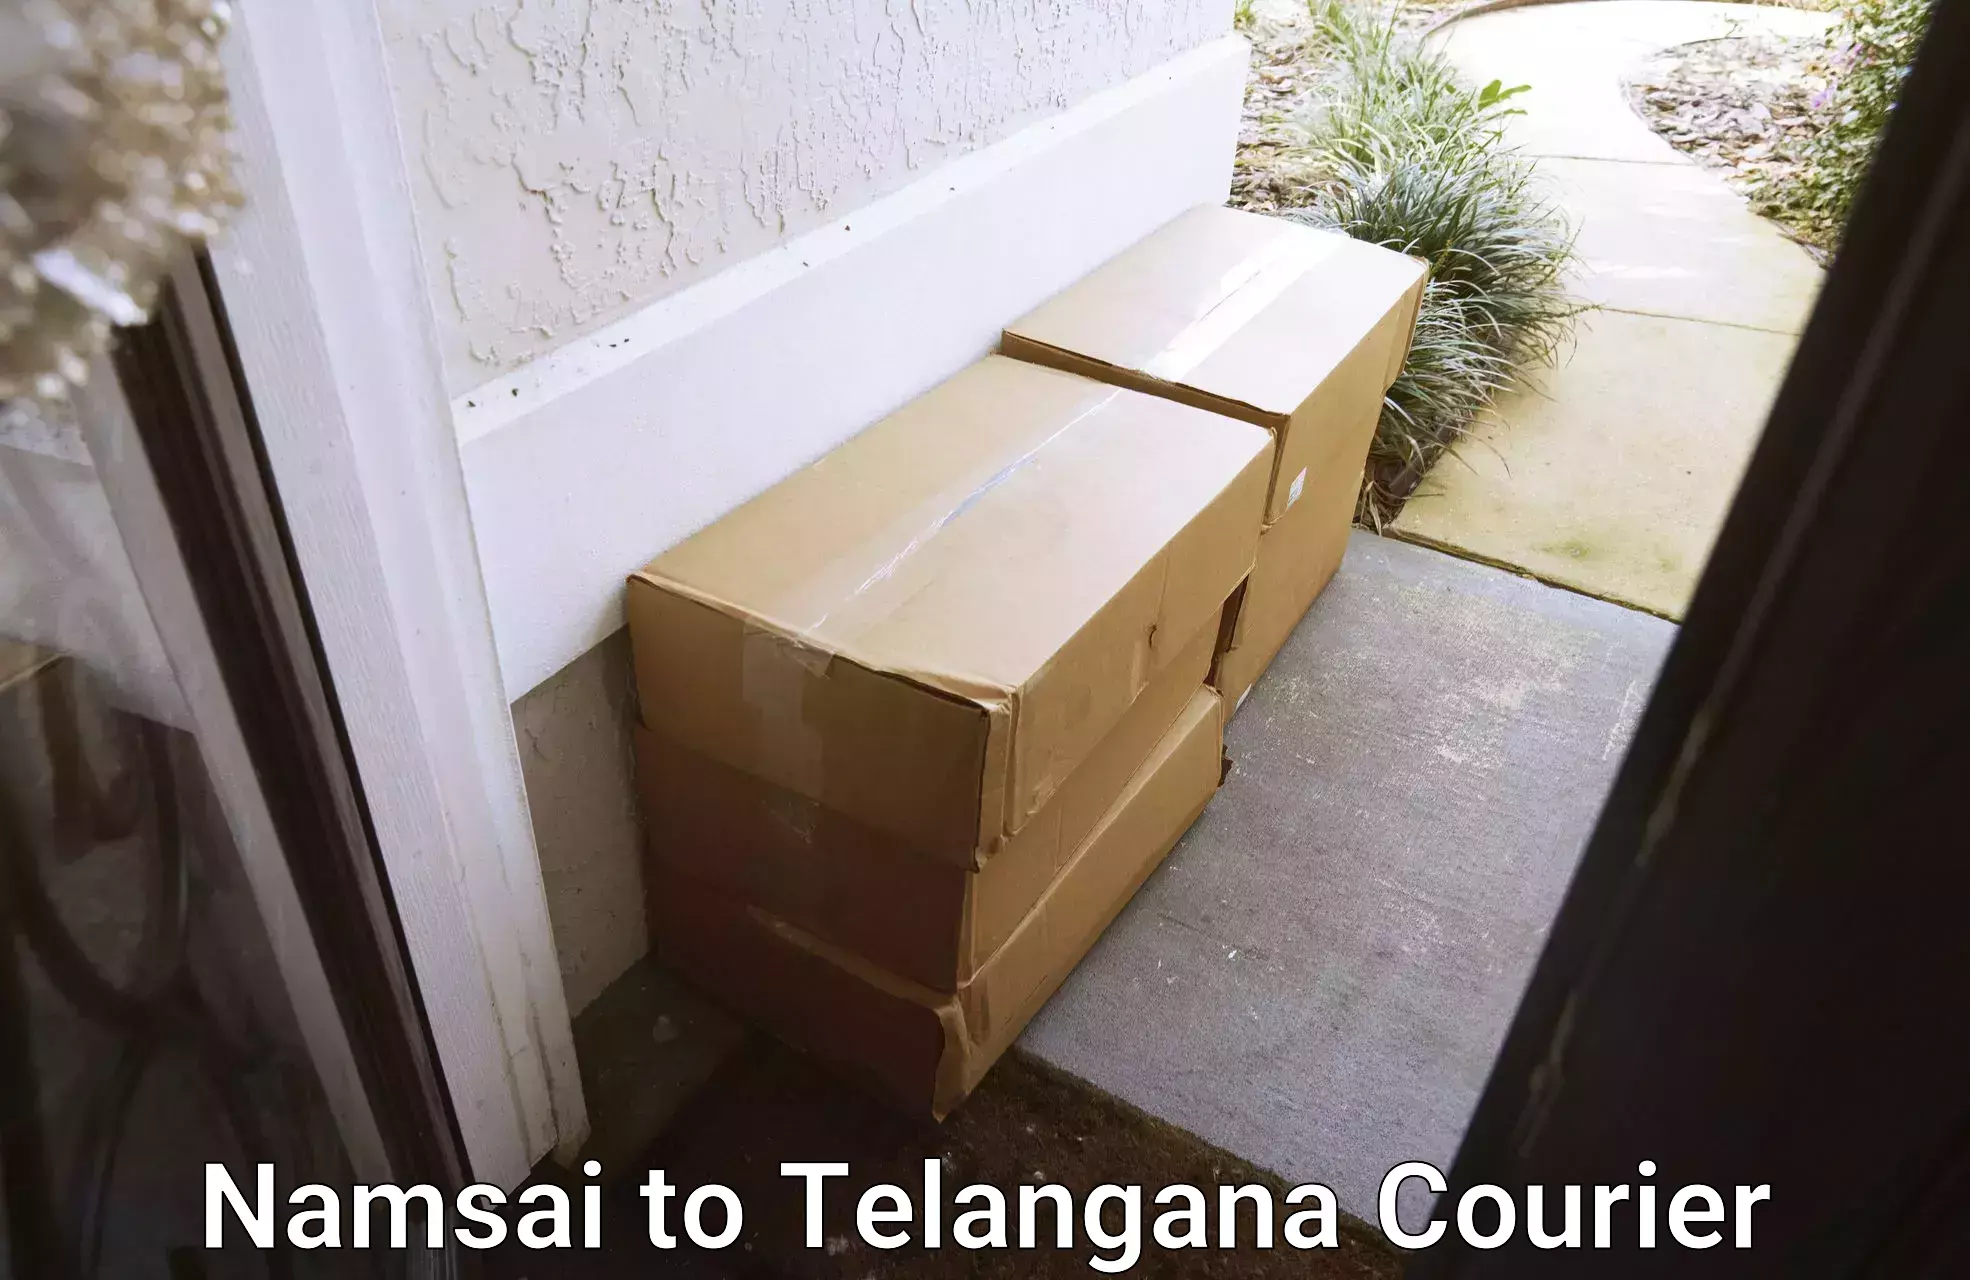 Premium courier services Namsai to Atmakur Wanaparthy